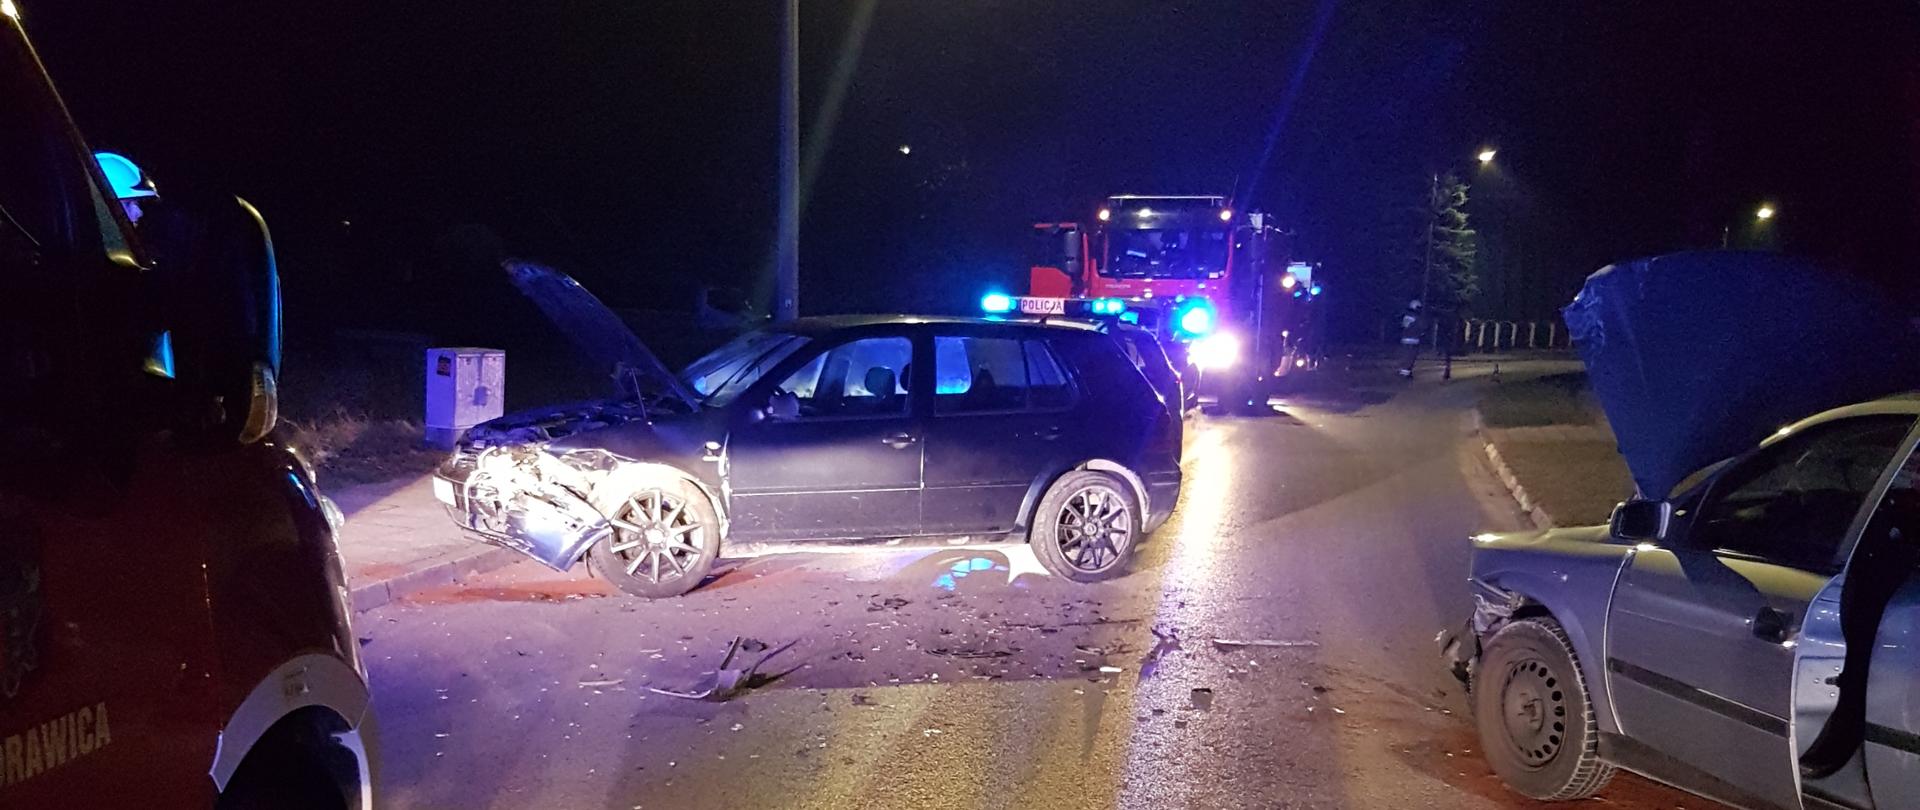 Zdjęcie przedstawia miejsce wypadku - na środku drogi znajdują się rozbite dwa pojazdy: po lewej VW Golf, po prawej Opel Astra. W tle widać samochód pożarniczy. 